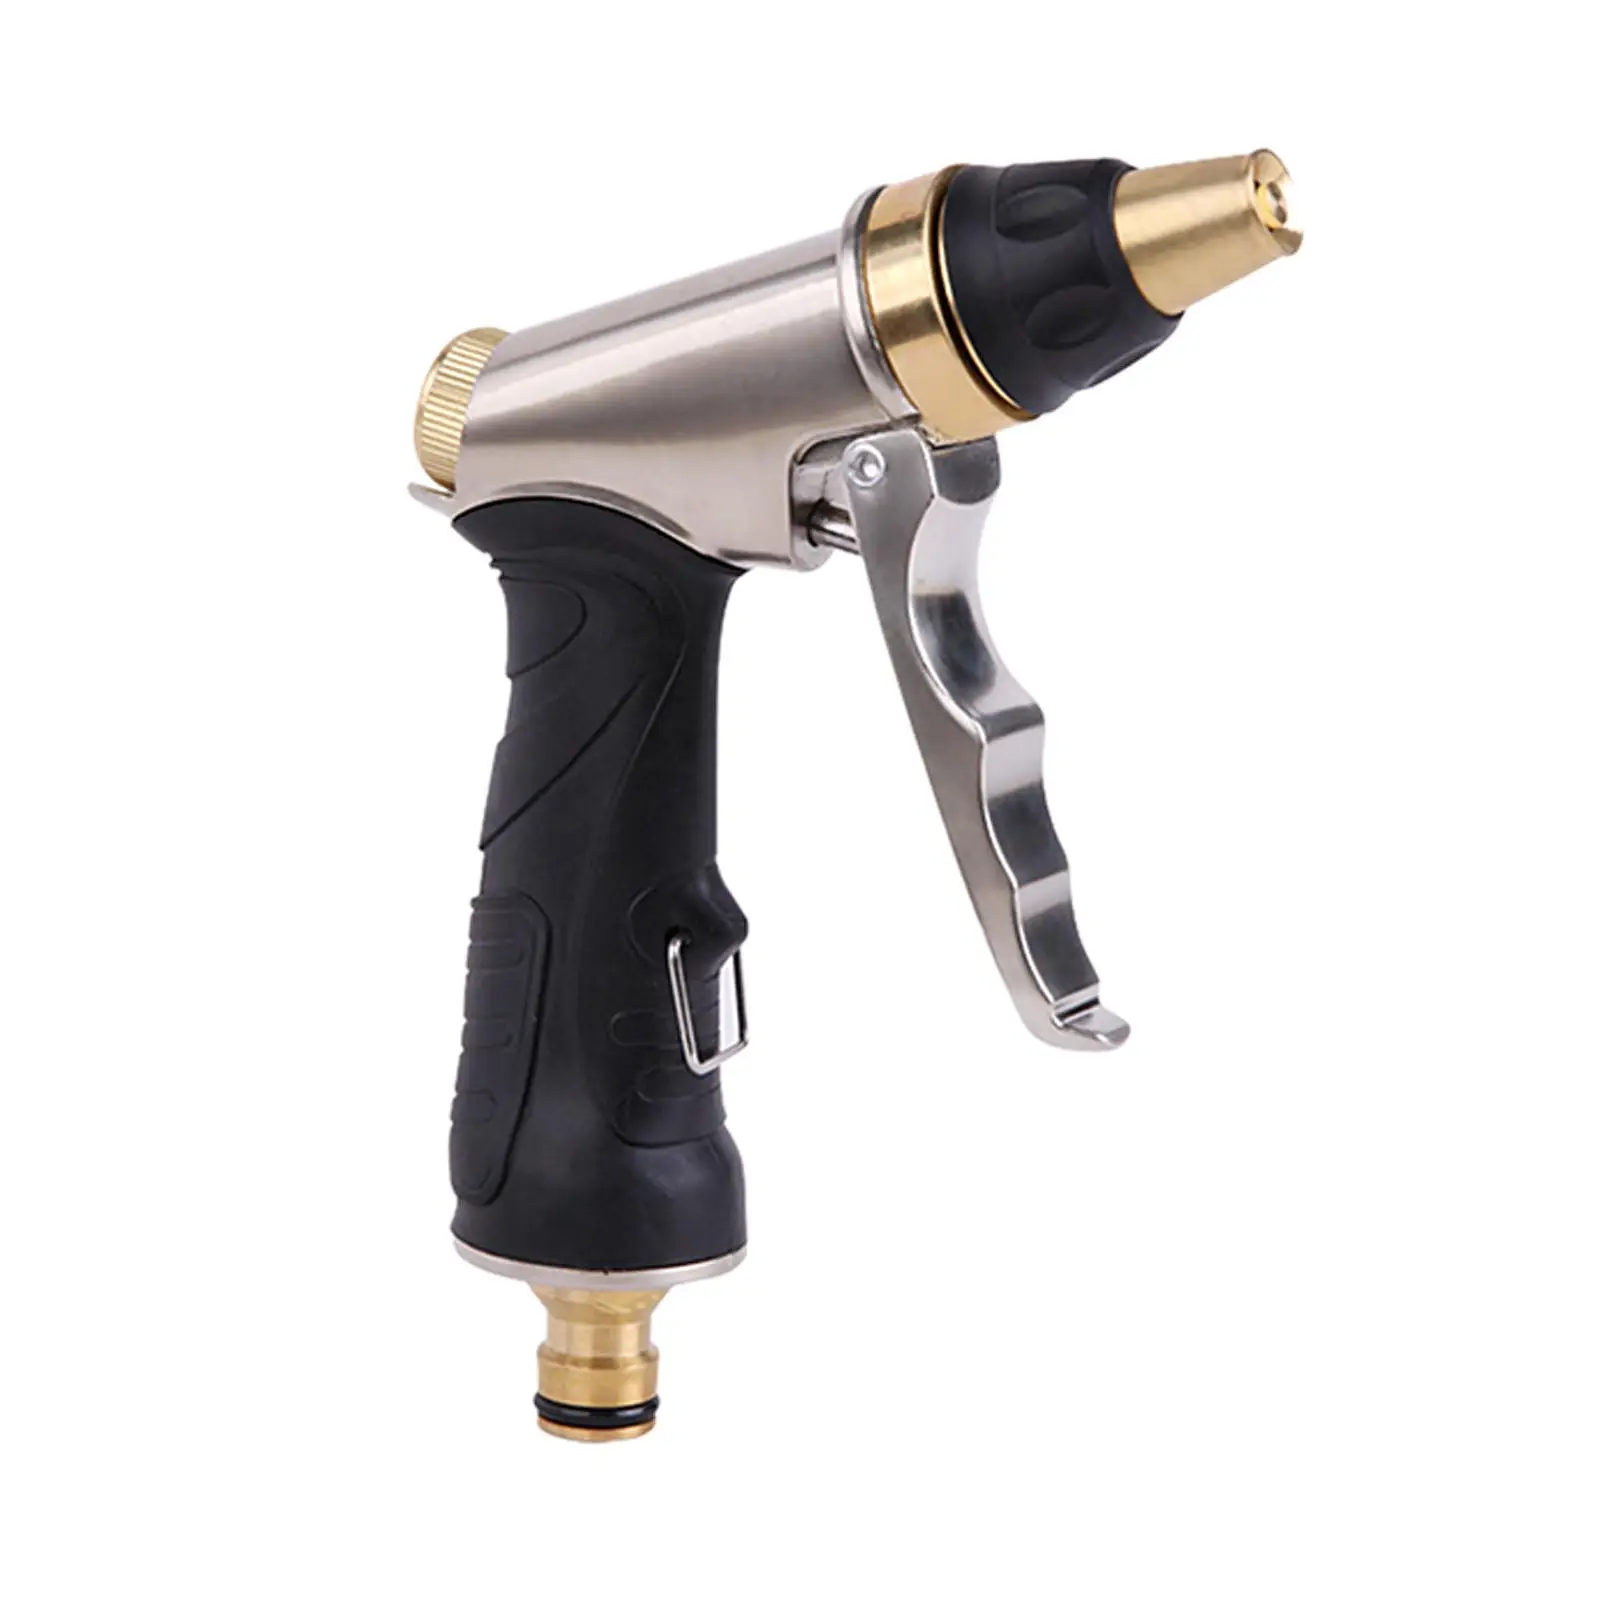 Garden Sprayer Adjustable Attachment Pressure Washer Spray Replacement Parts